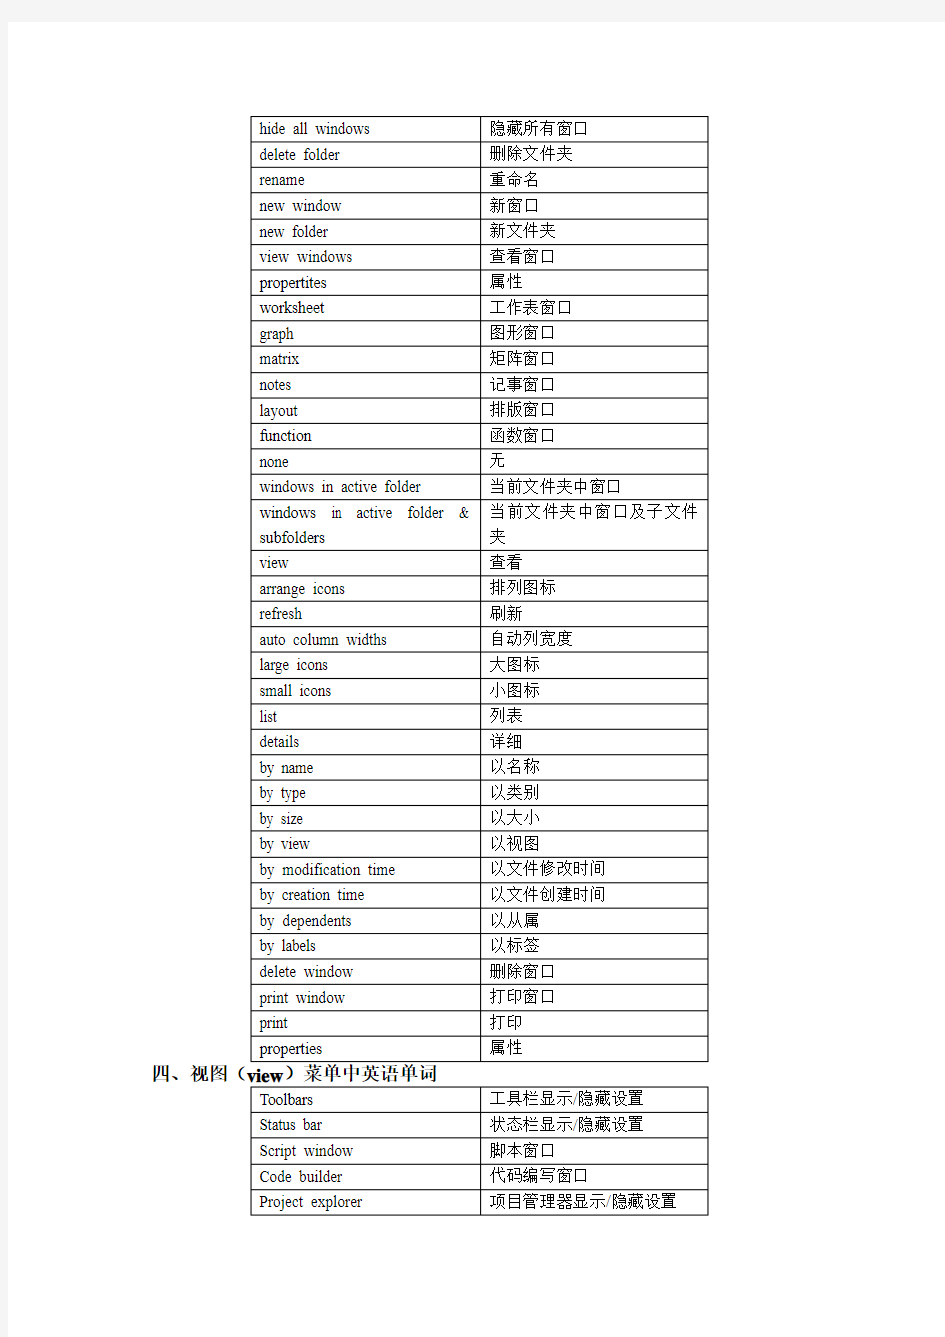 英语软件中菜单英语单词翻译